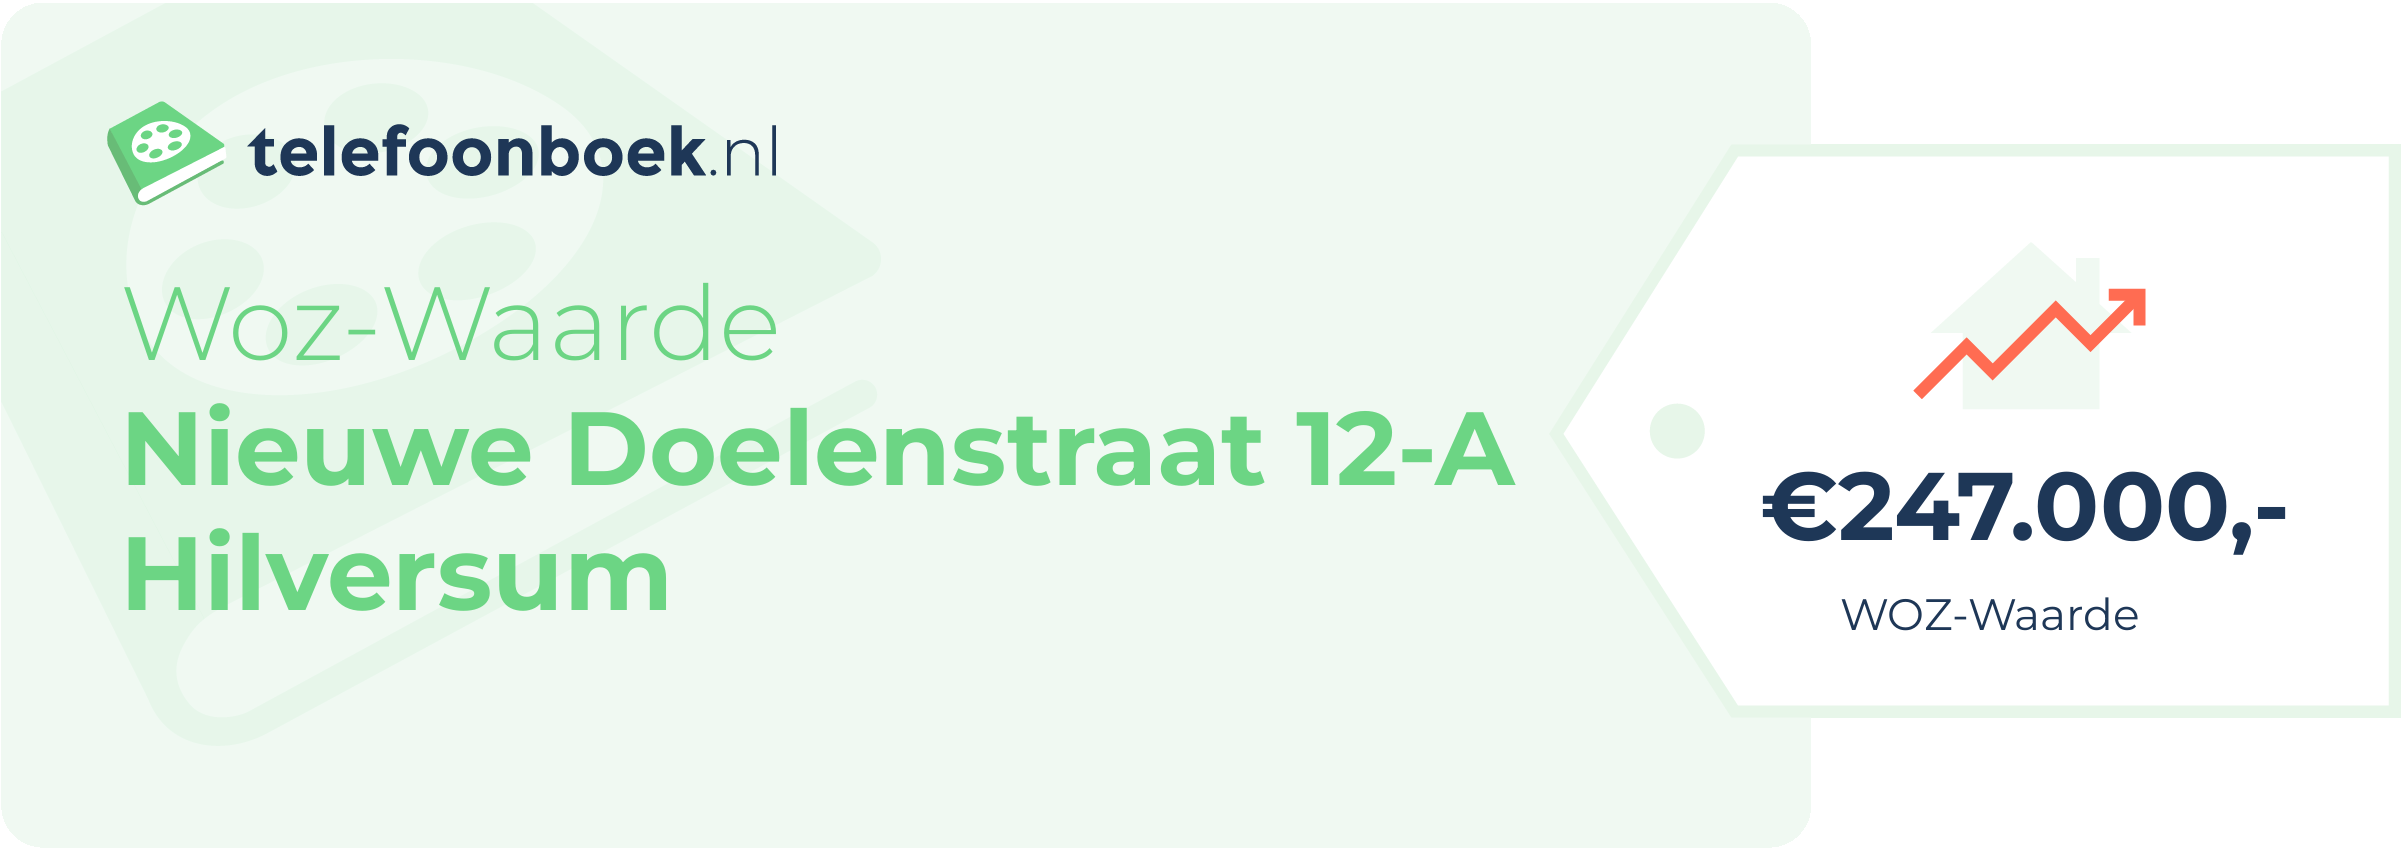 WOZ-waarde Nieuwe Doelenstraat 12-A Hilversum